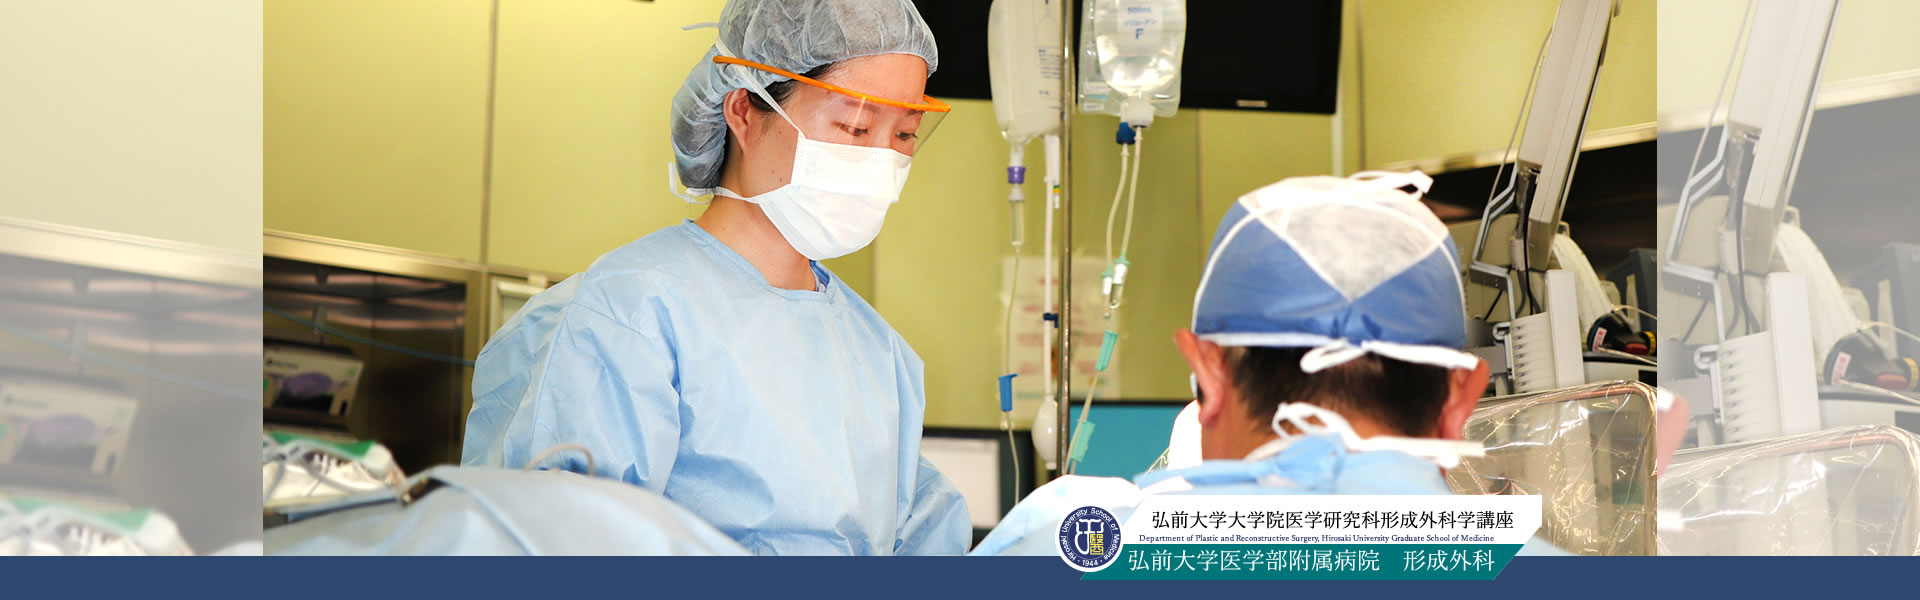 スライド2|弘前大学医学部 形成外科